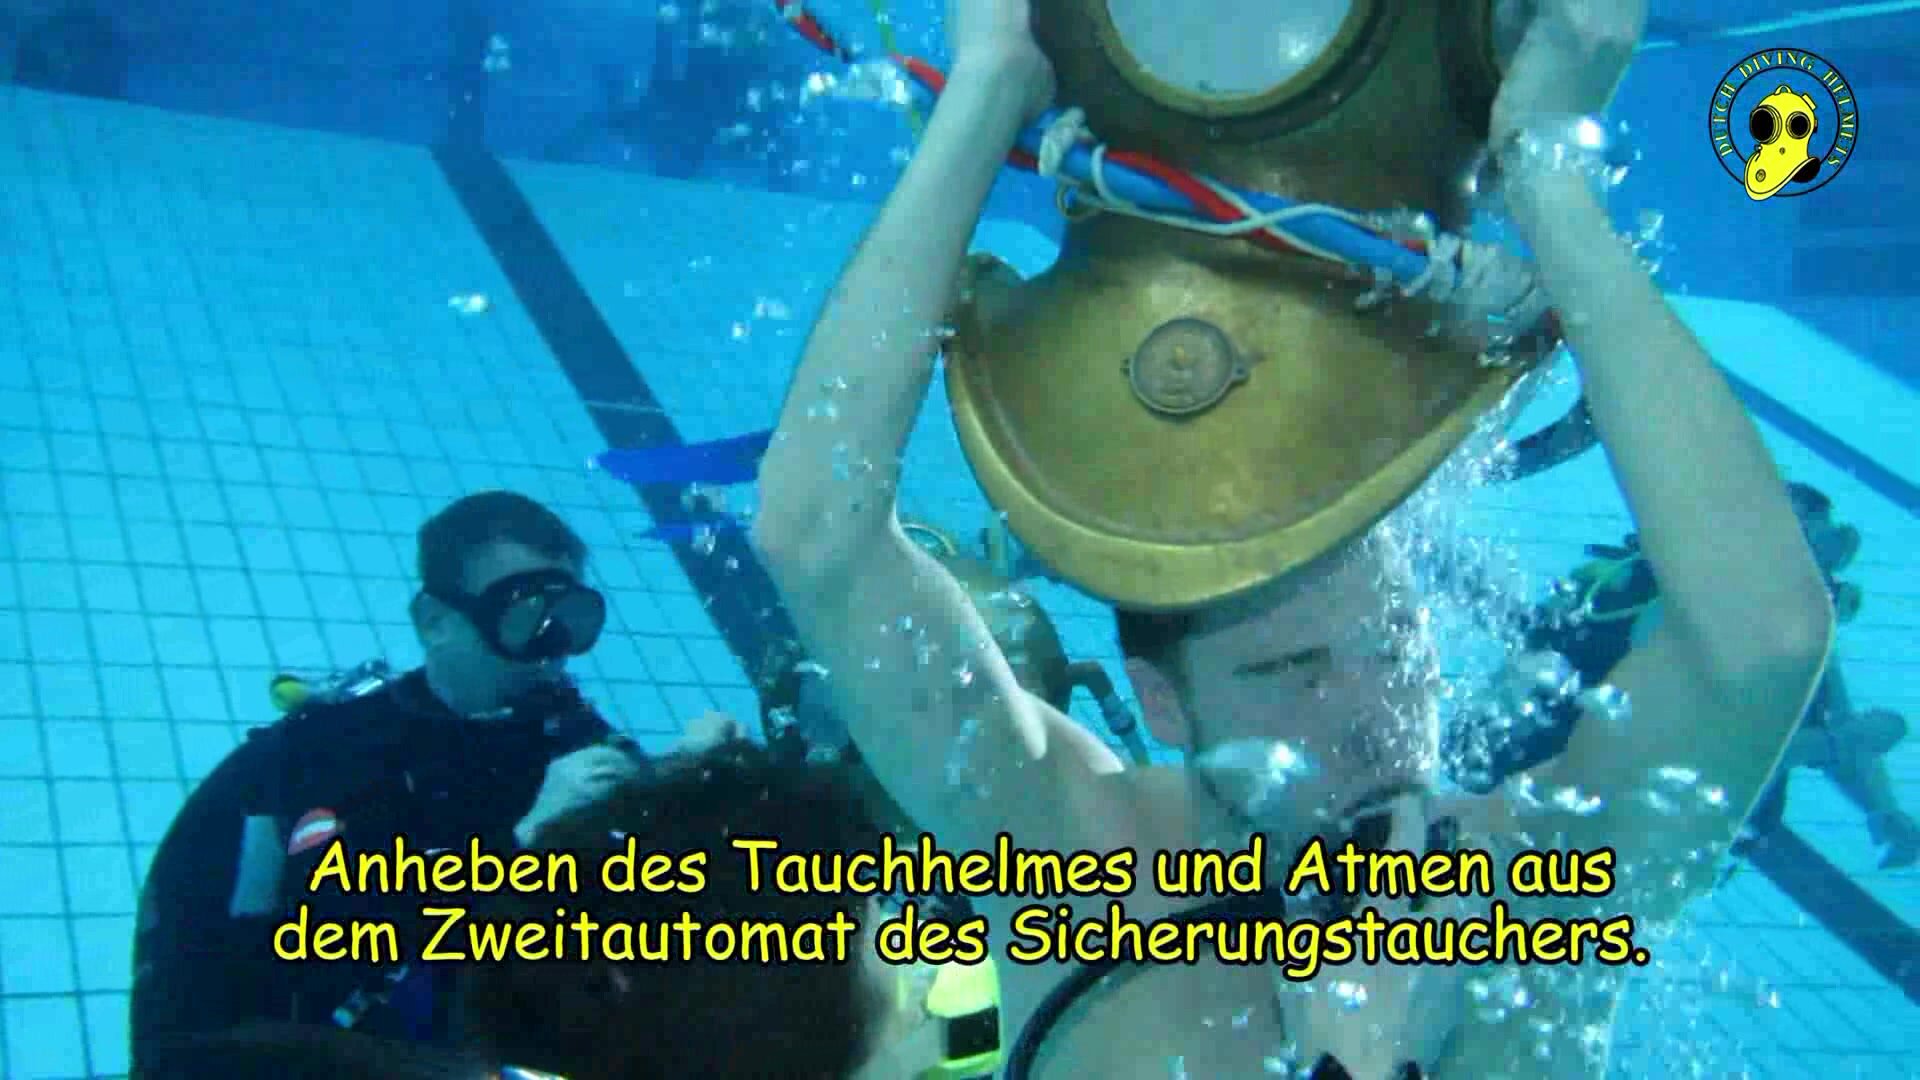 Dutch helmet divers barefaced underwater in pool